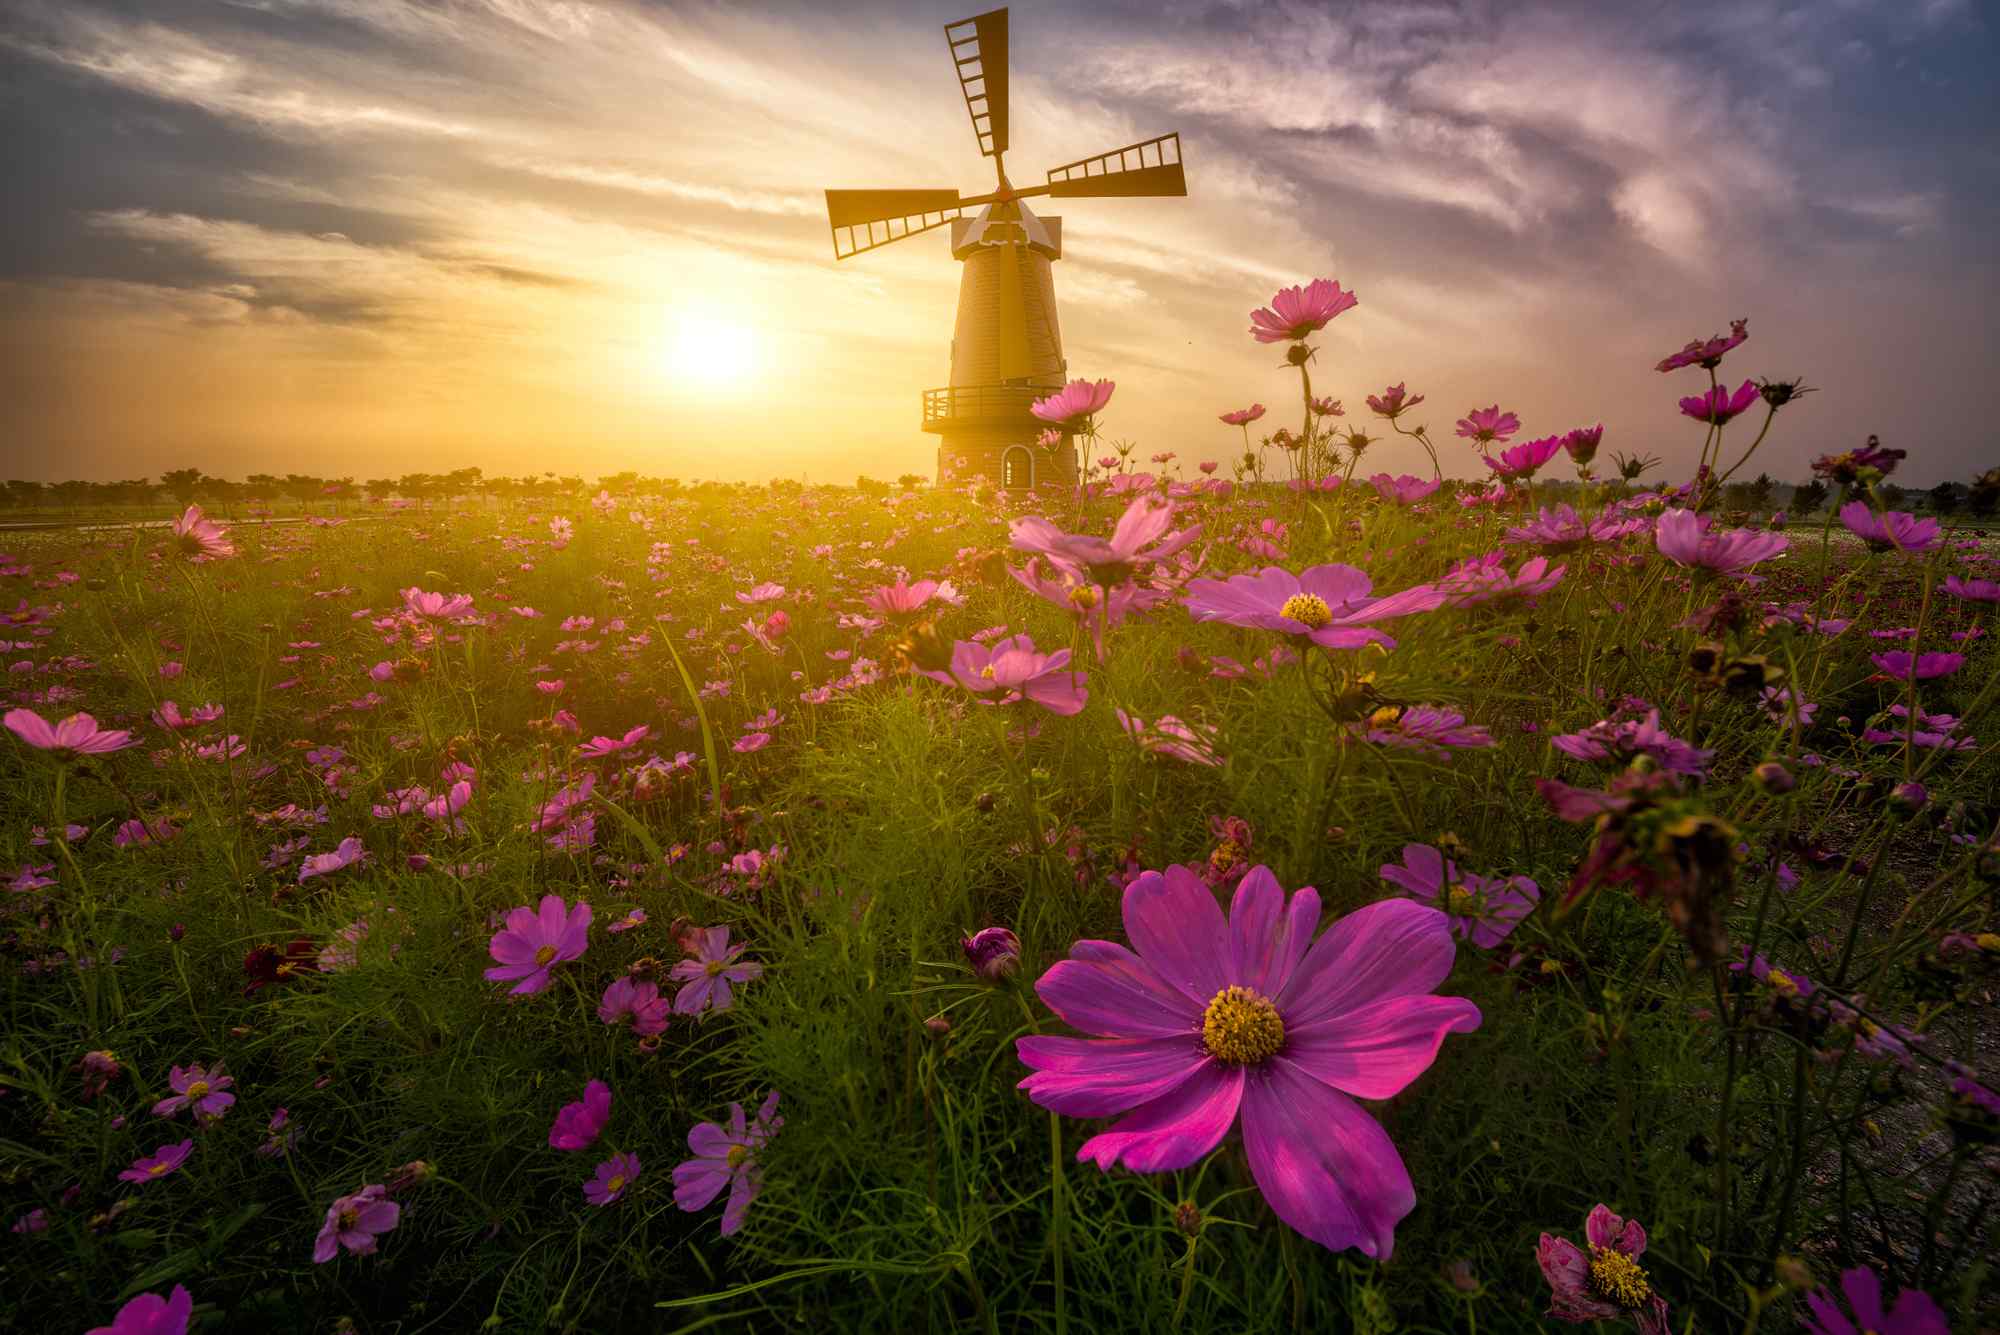 唯美的荷兰风车与花朵风景图片